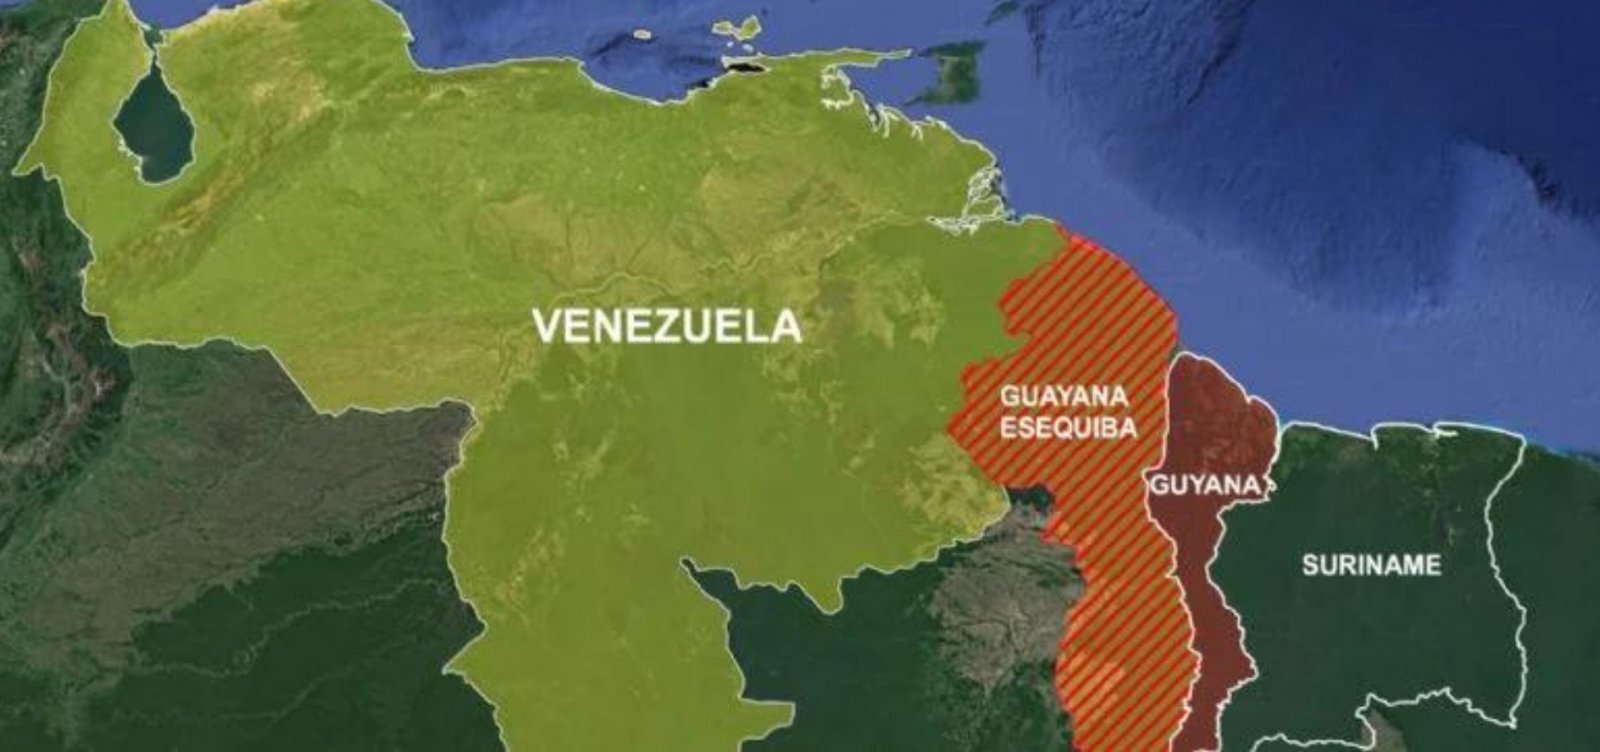 Venezuelanos votam neste domingo referendo sobre anexar território da Guiana